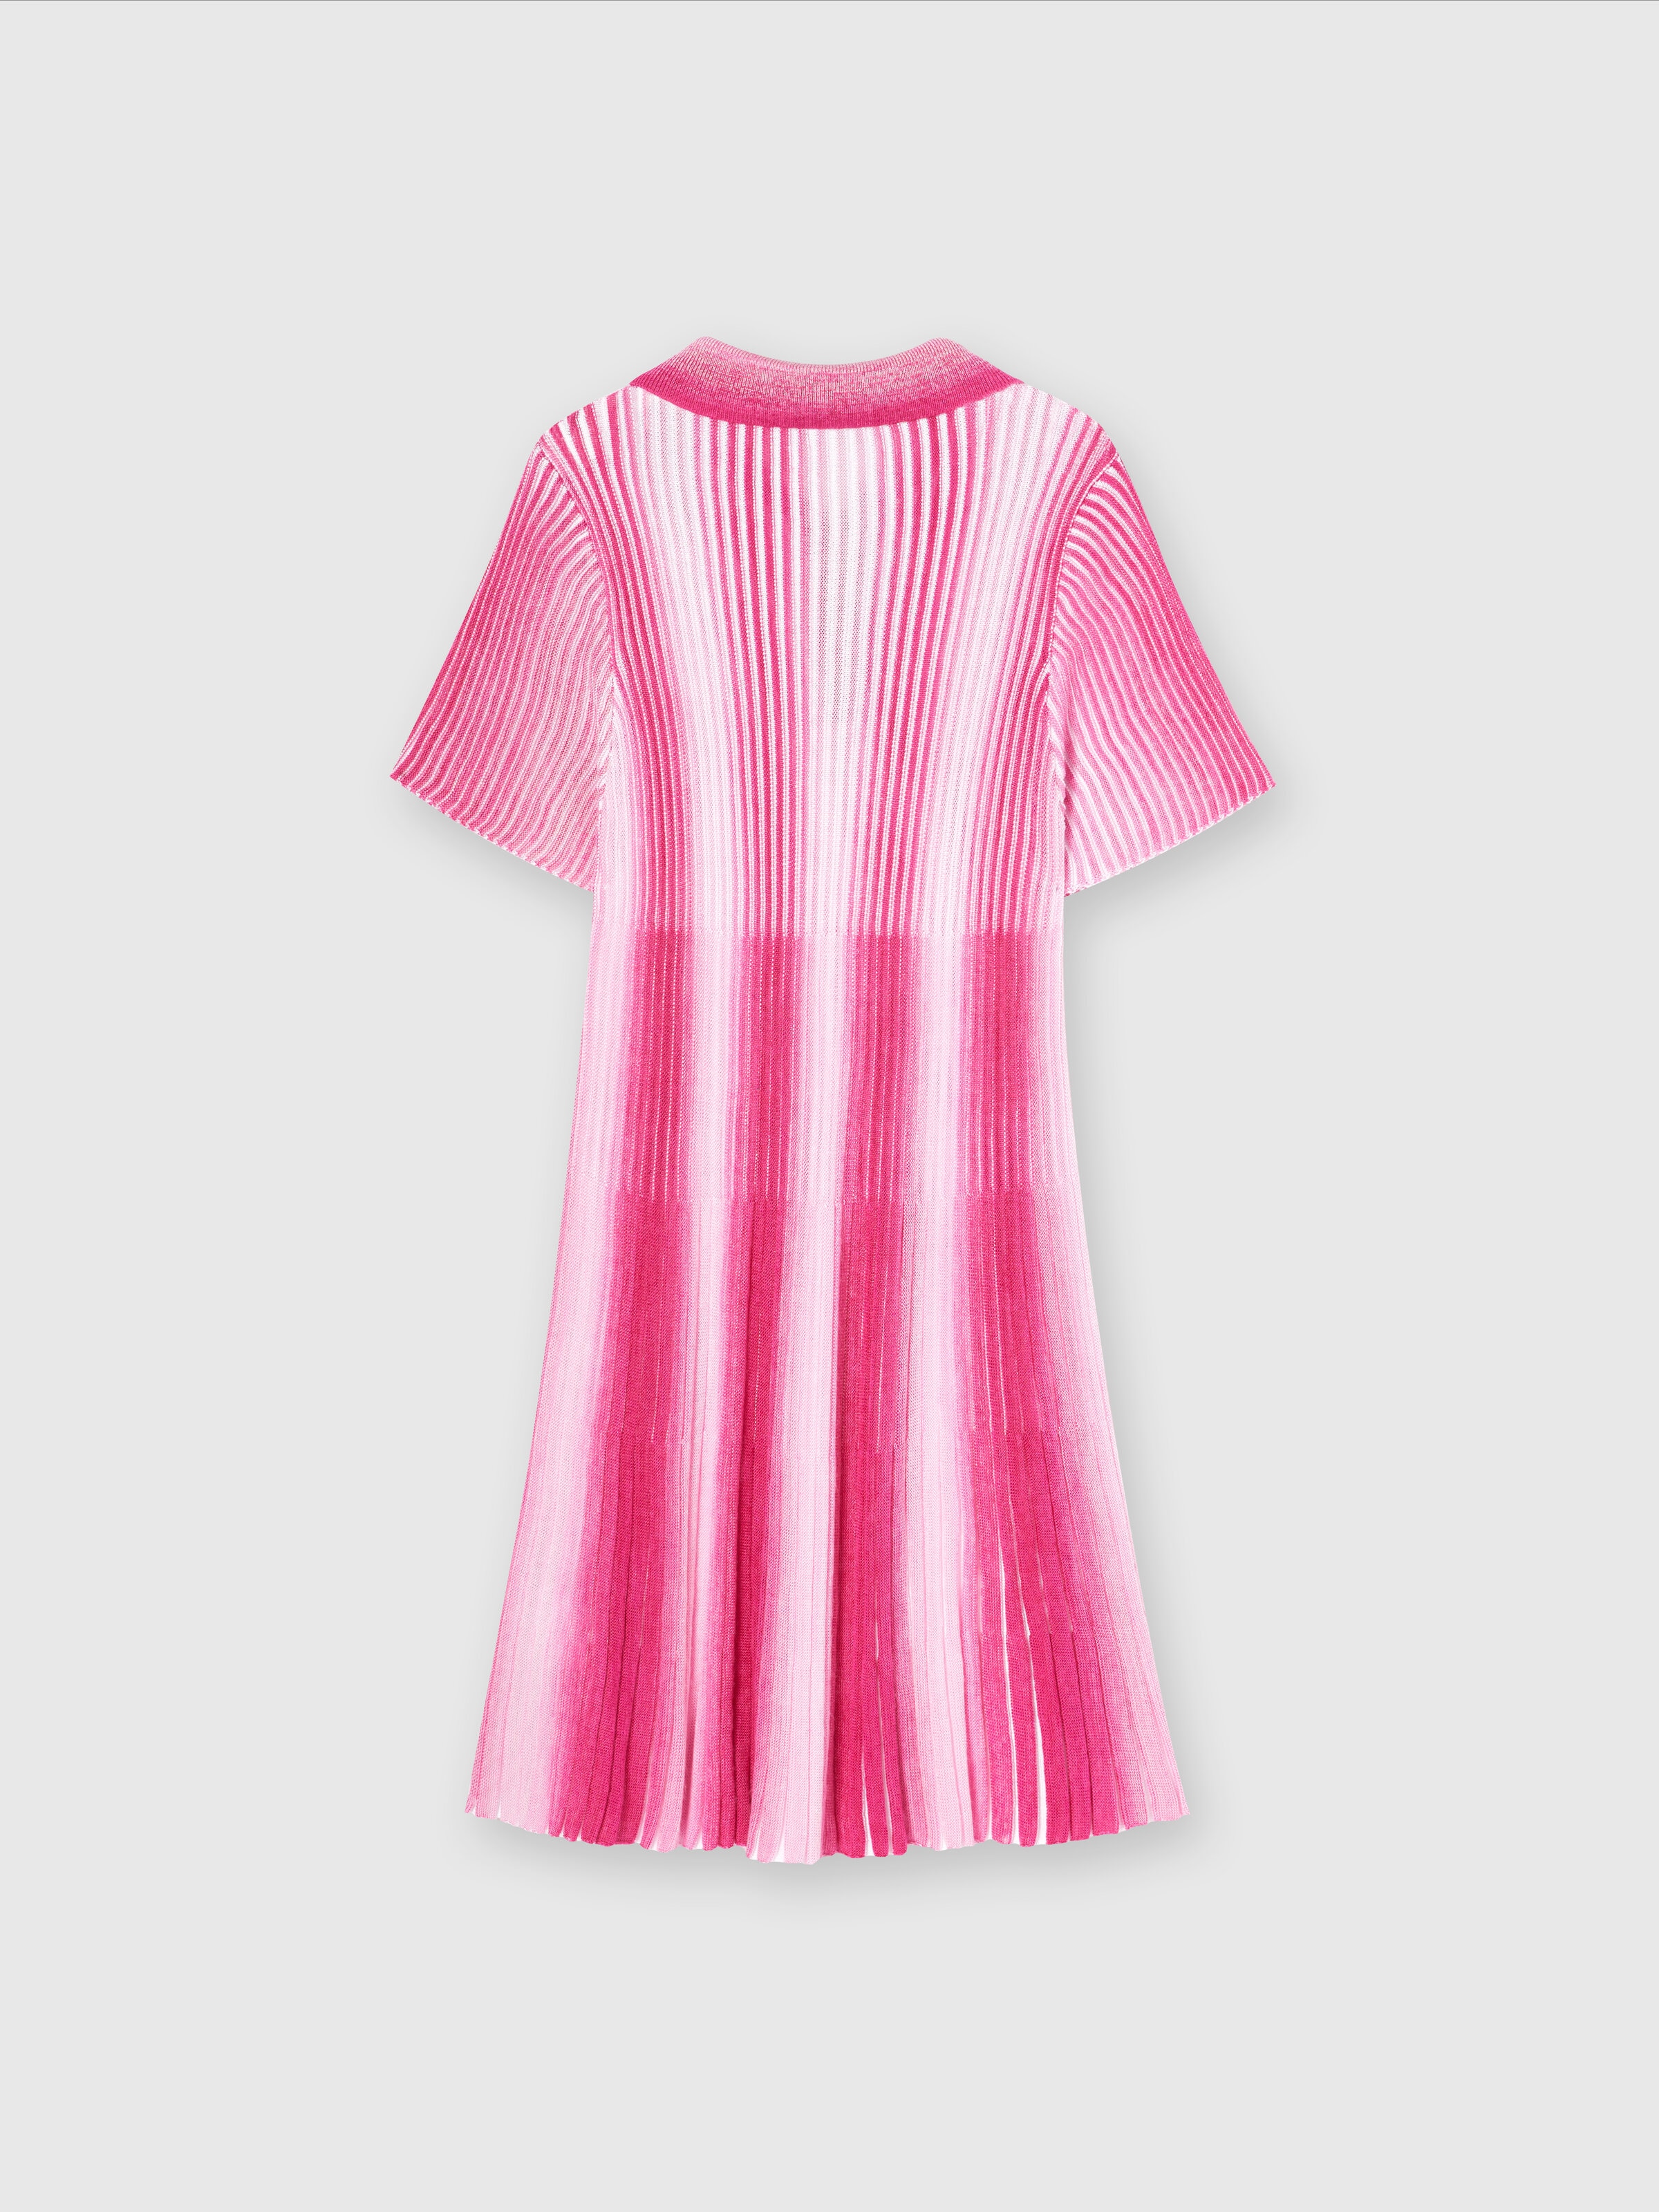 Midi dress in striped viscose knit, Pink   - 1